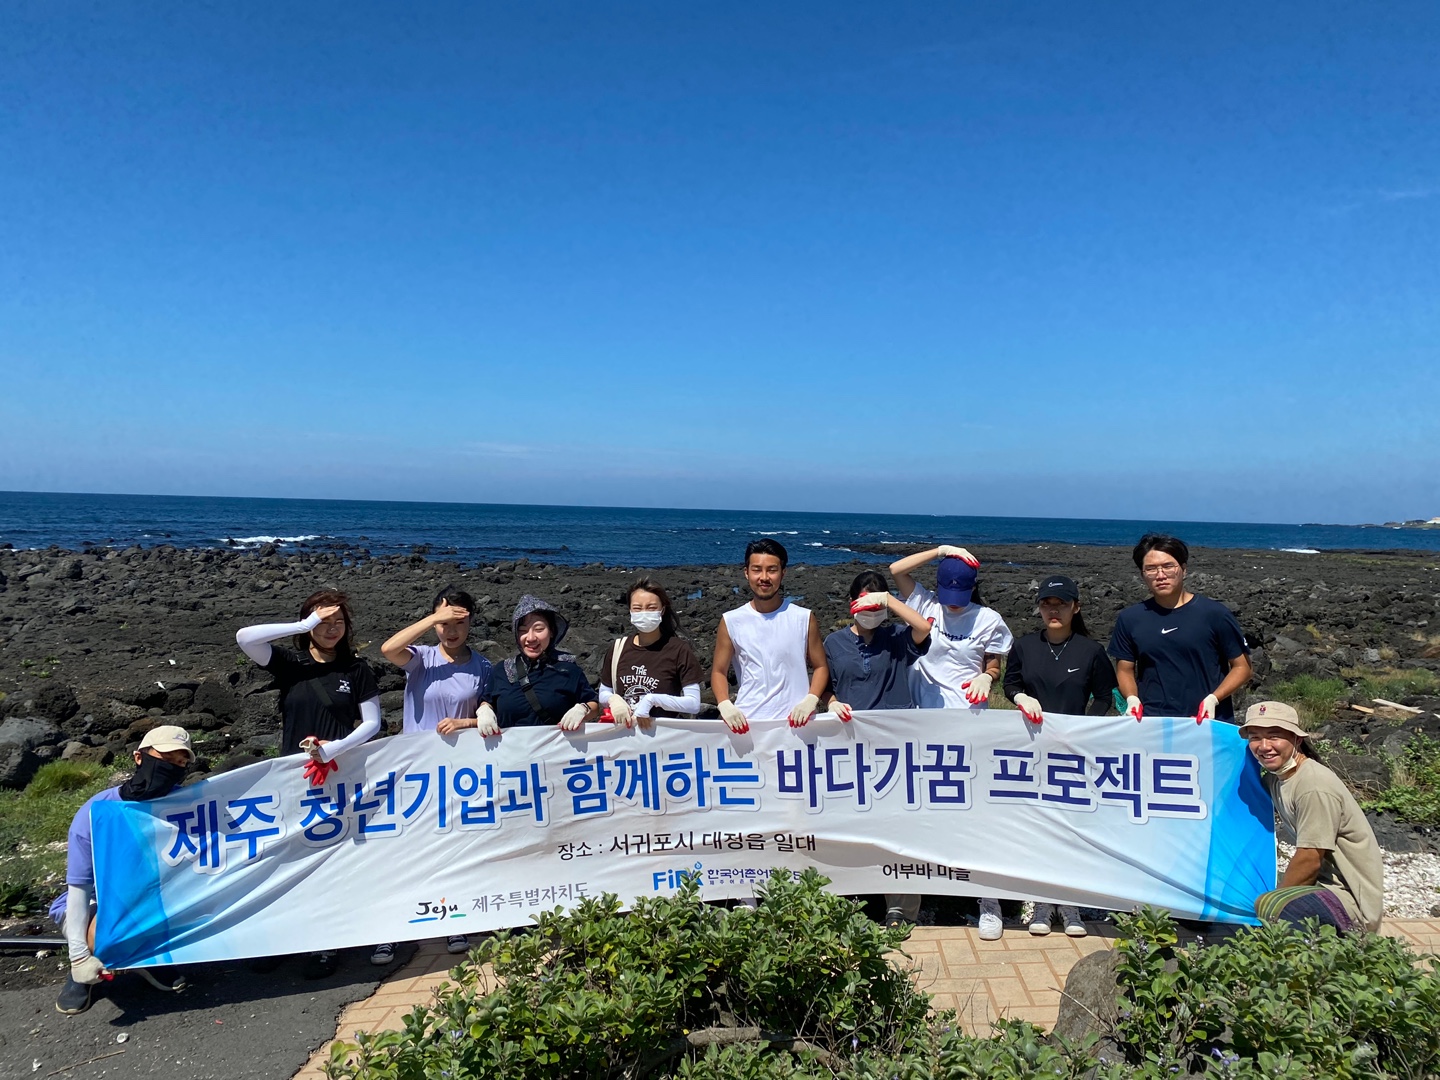 제3회 바다가꿈 프로젝트 제주 청년기업과 함께하는 바다가꿈 프로젝트, 장소 : 서귀포시 대정읍 일대, Jeju 제주특별자치도, FiFA 한국어촌어항공단,  어부바마을 이라는 문구가 적힌 현수막을 들고 단체 사진